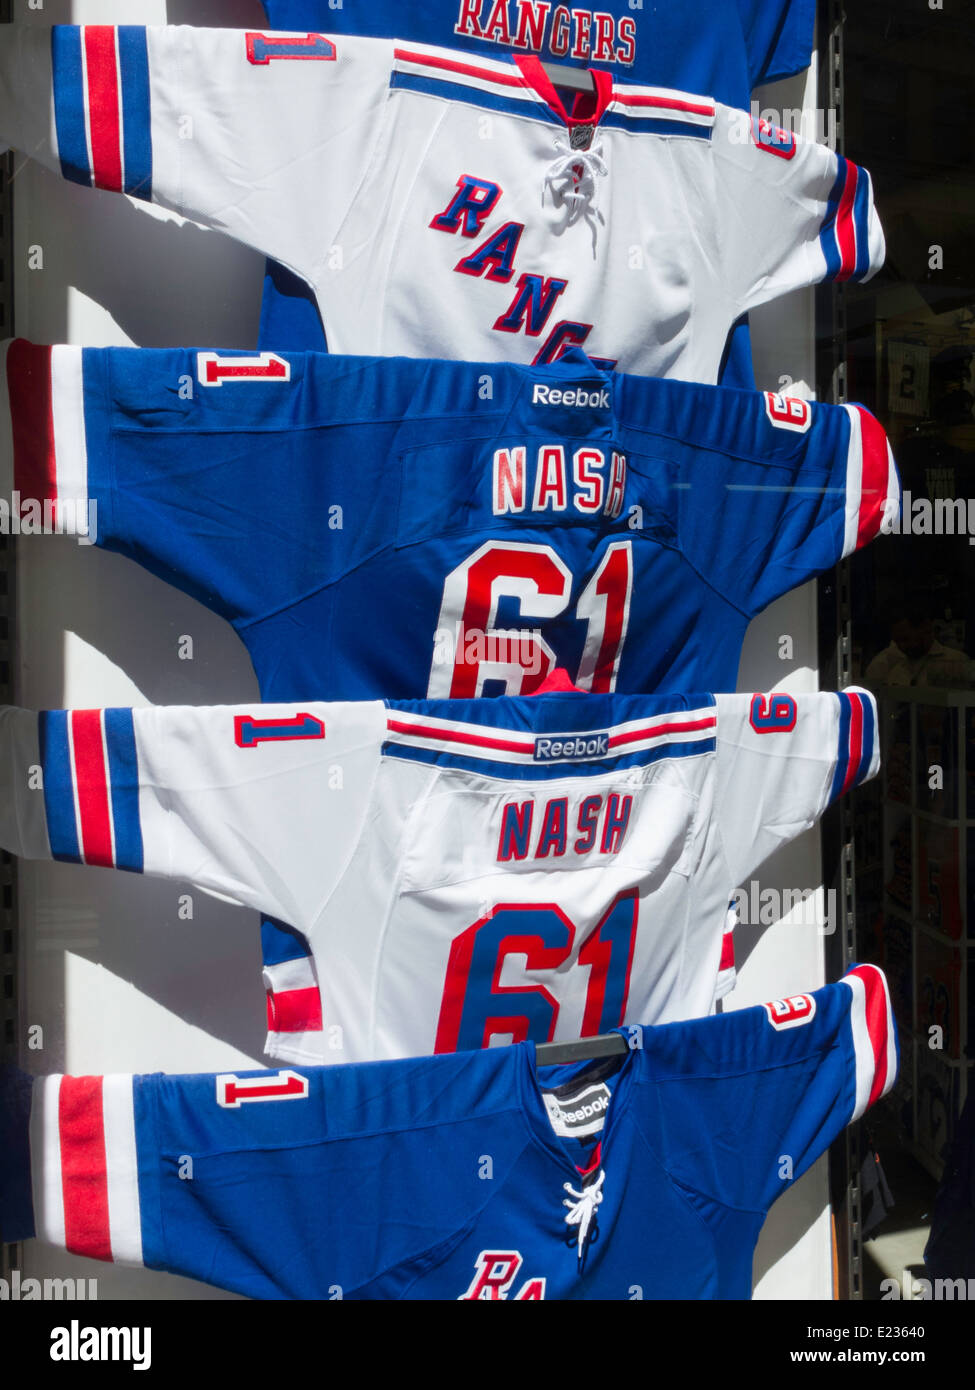 Rangers NHL Eishockey Trikot, speichern Display, NYC, USA Stockfoto